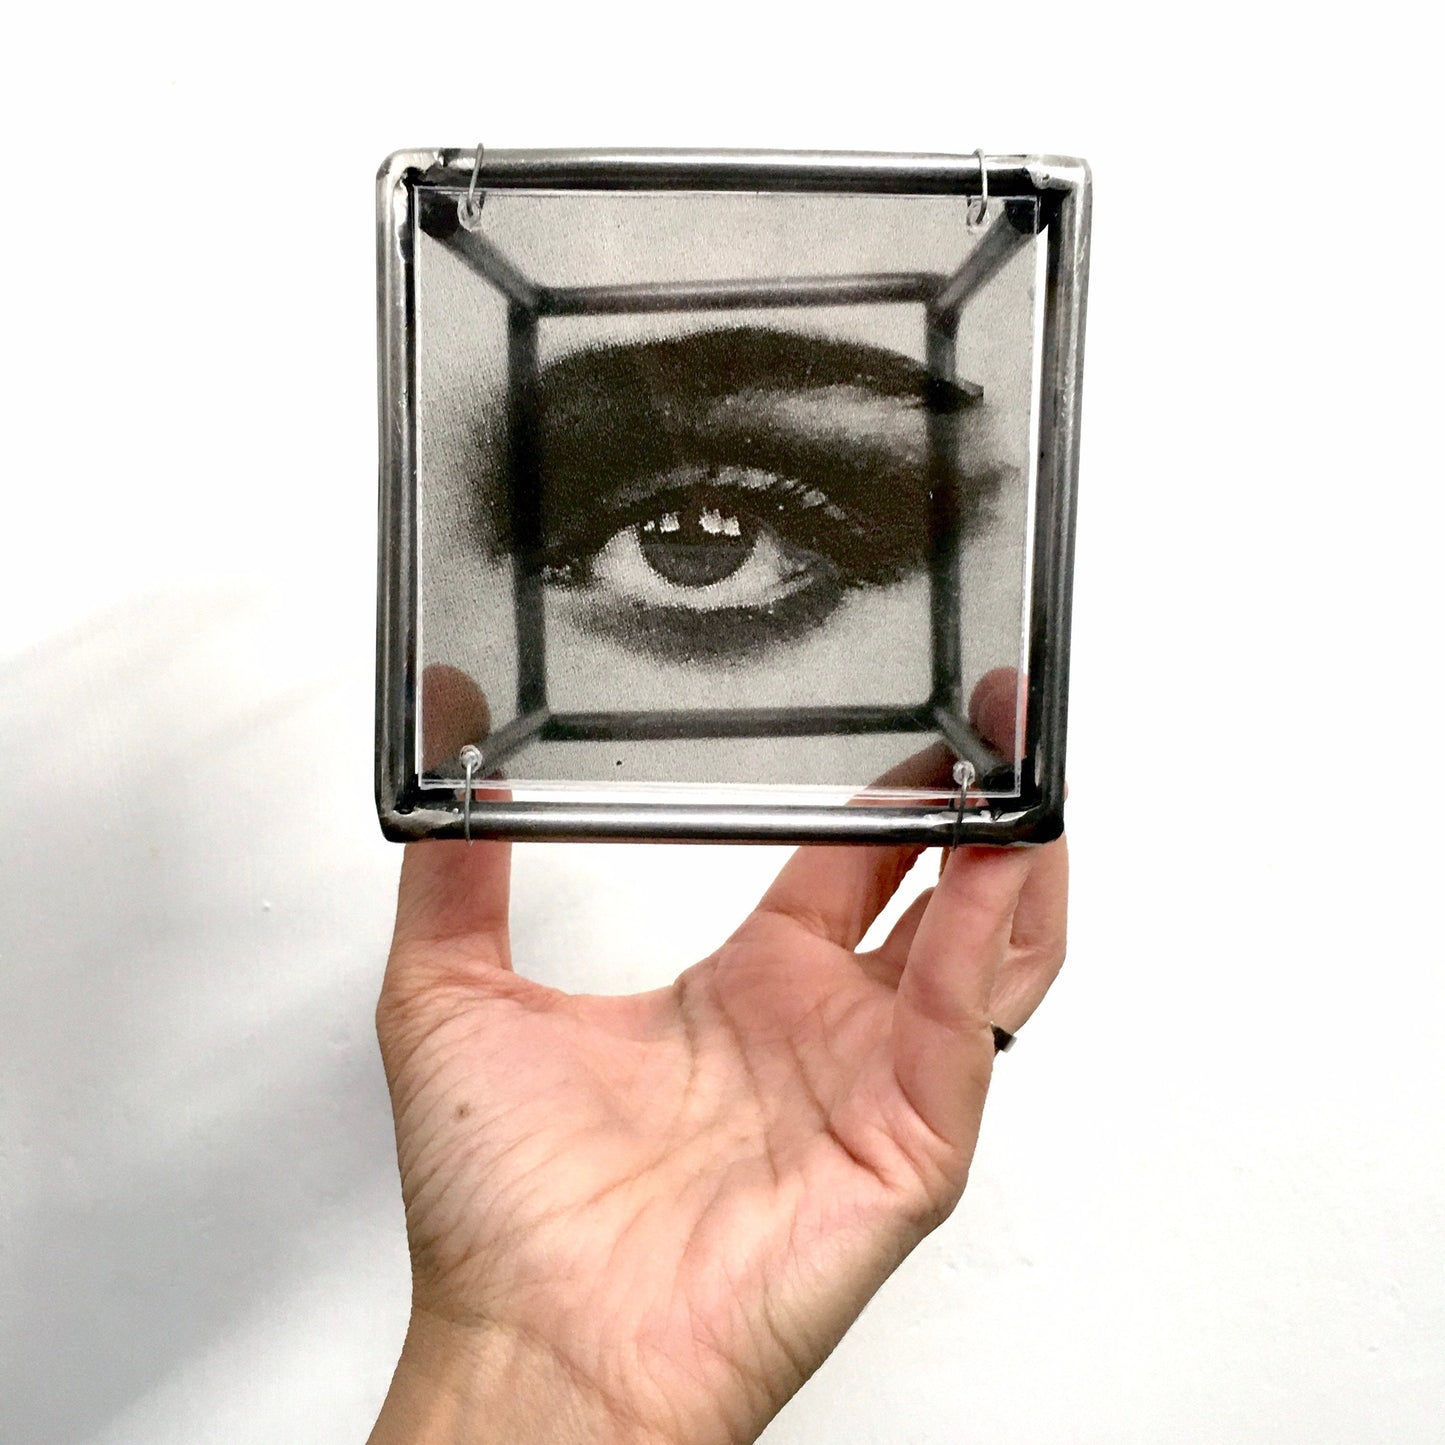 Eye, wall art sculpture, metal, art print and plexiglass, Mixed media art object. Ideal gift for a couple. - artandshadow